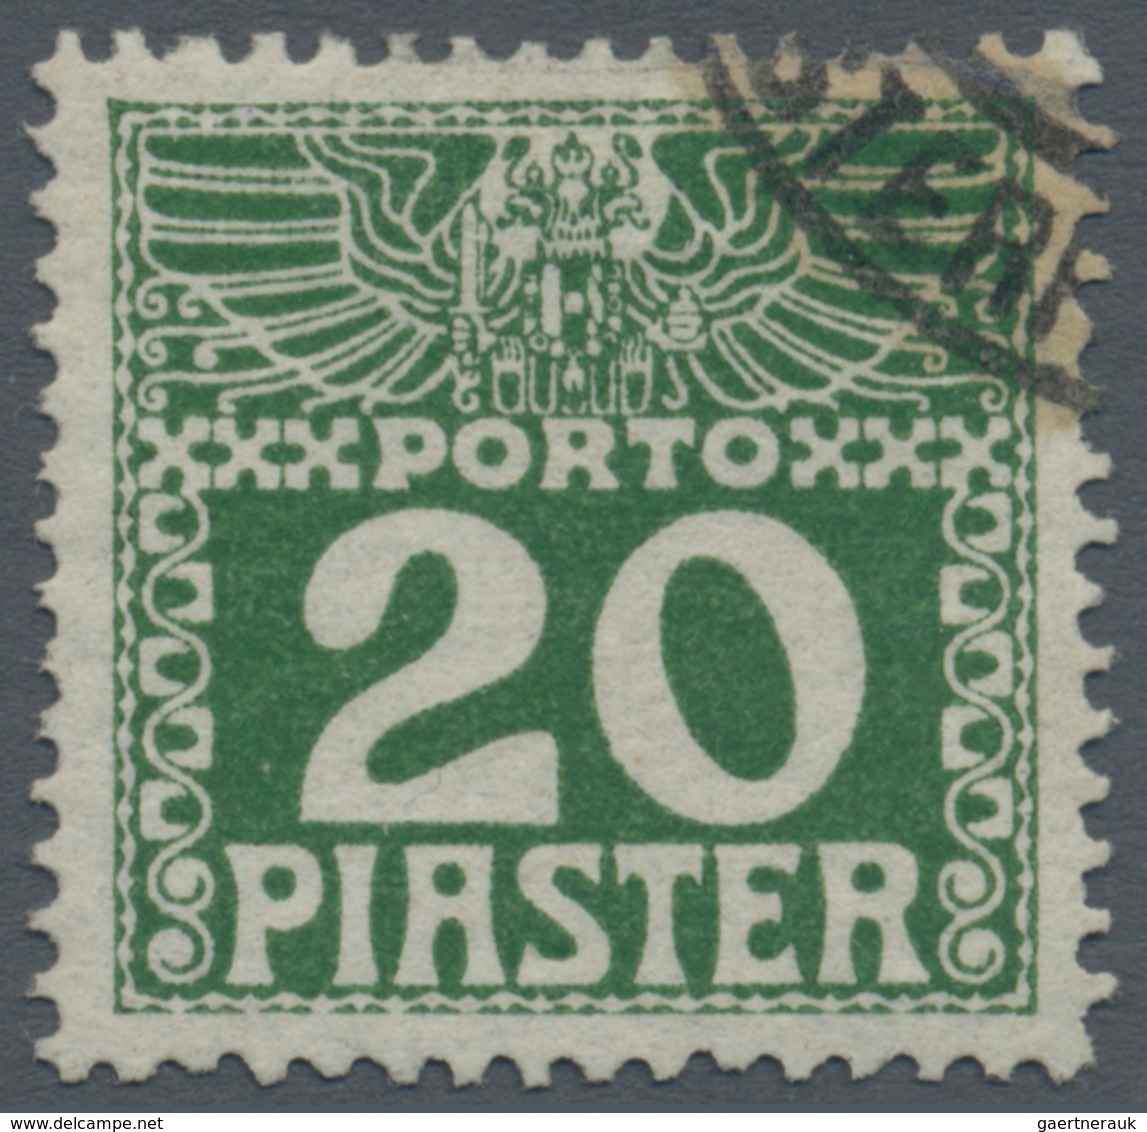 Österreichische Post in der Levante - Portomarken: 1908, ¼ Piaster bis 30 Piaster in b-Farbe dunkelg